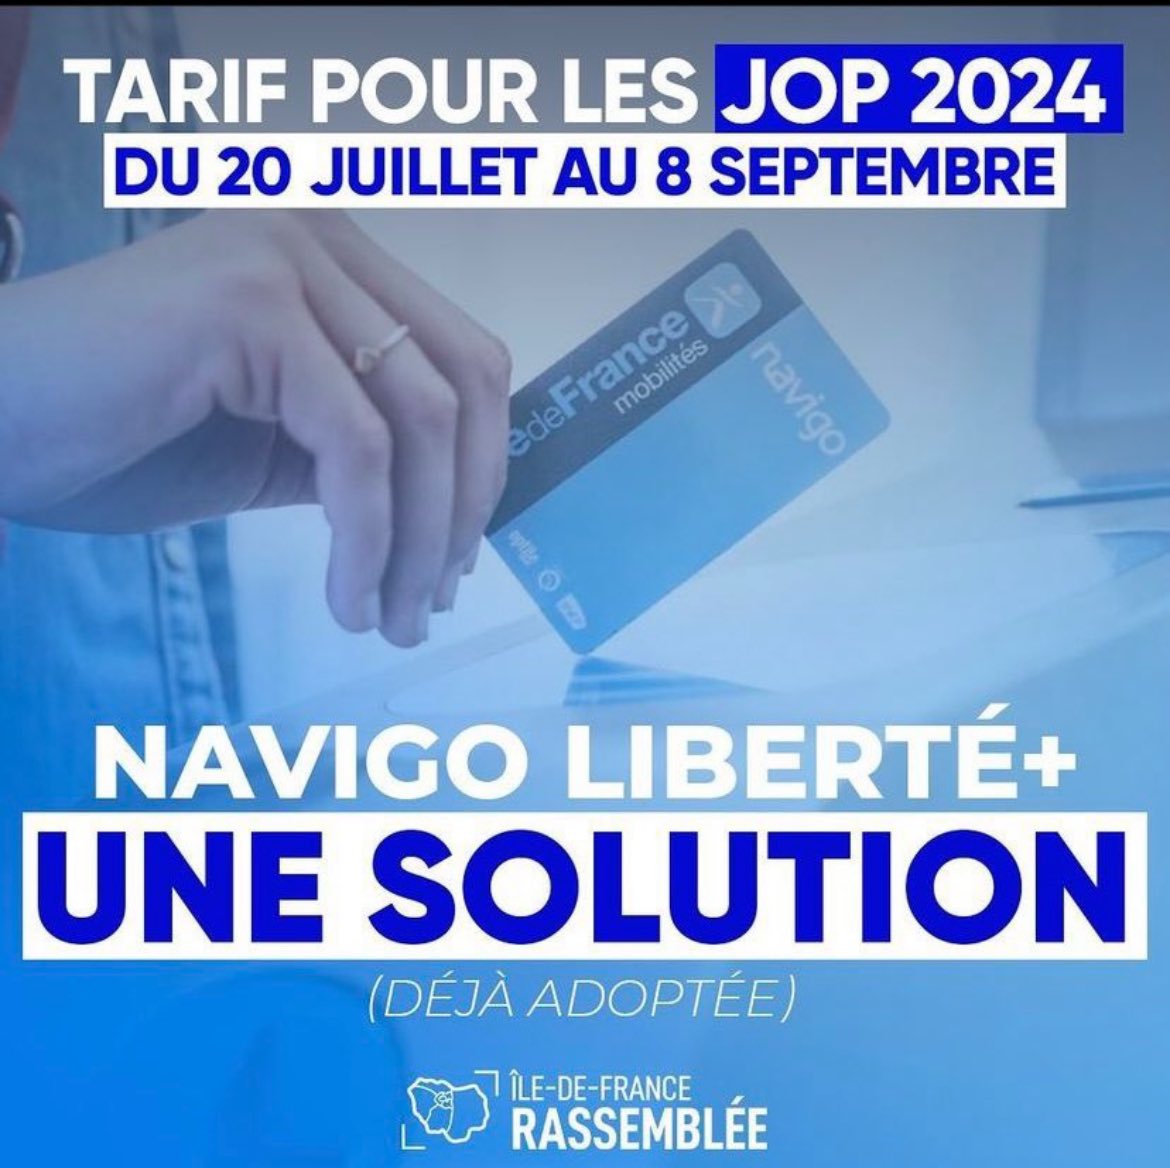 ❌ faux ! le ticket de bus restera à 1,73€ pour les Franciliens avec la formule Liberté+. @vpecresse